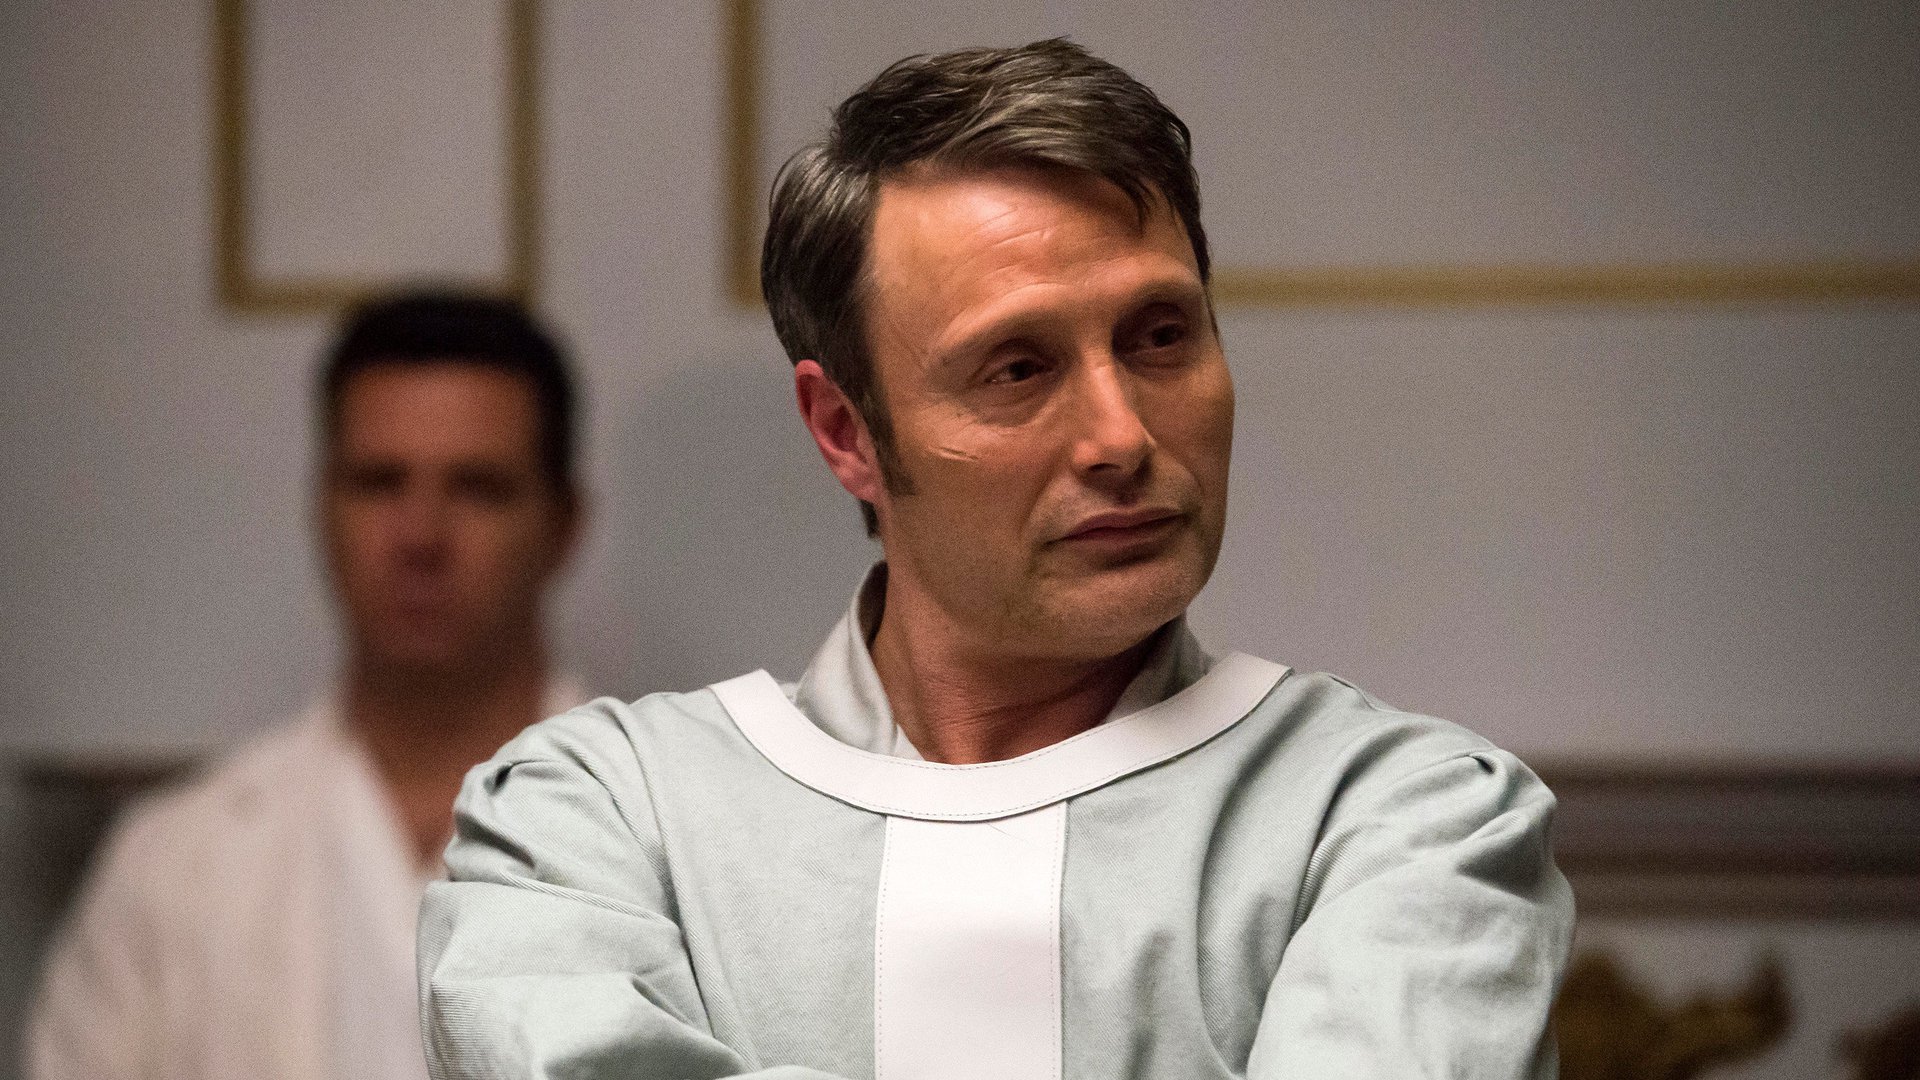 Mads Mikkelsen as Dr. Hannibal Lecter